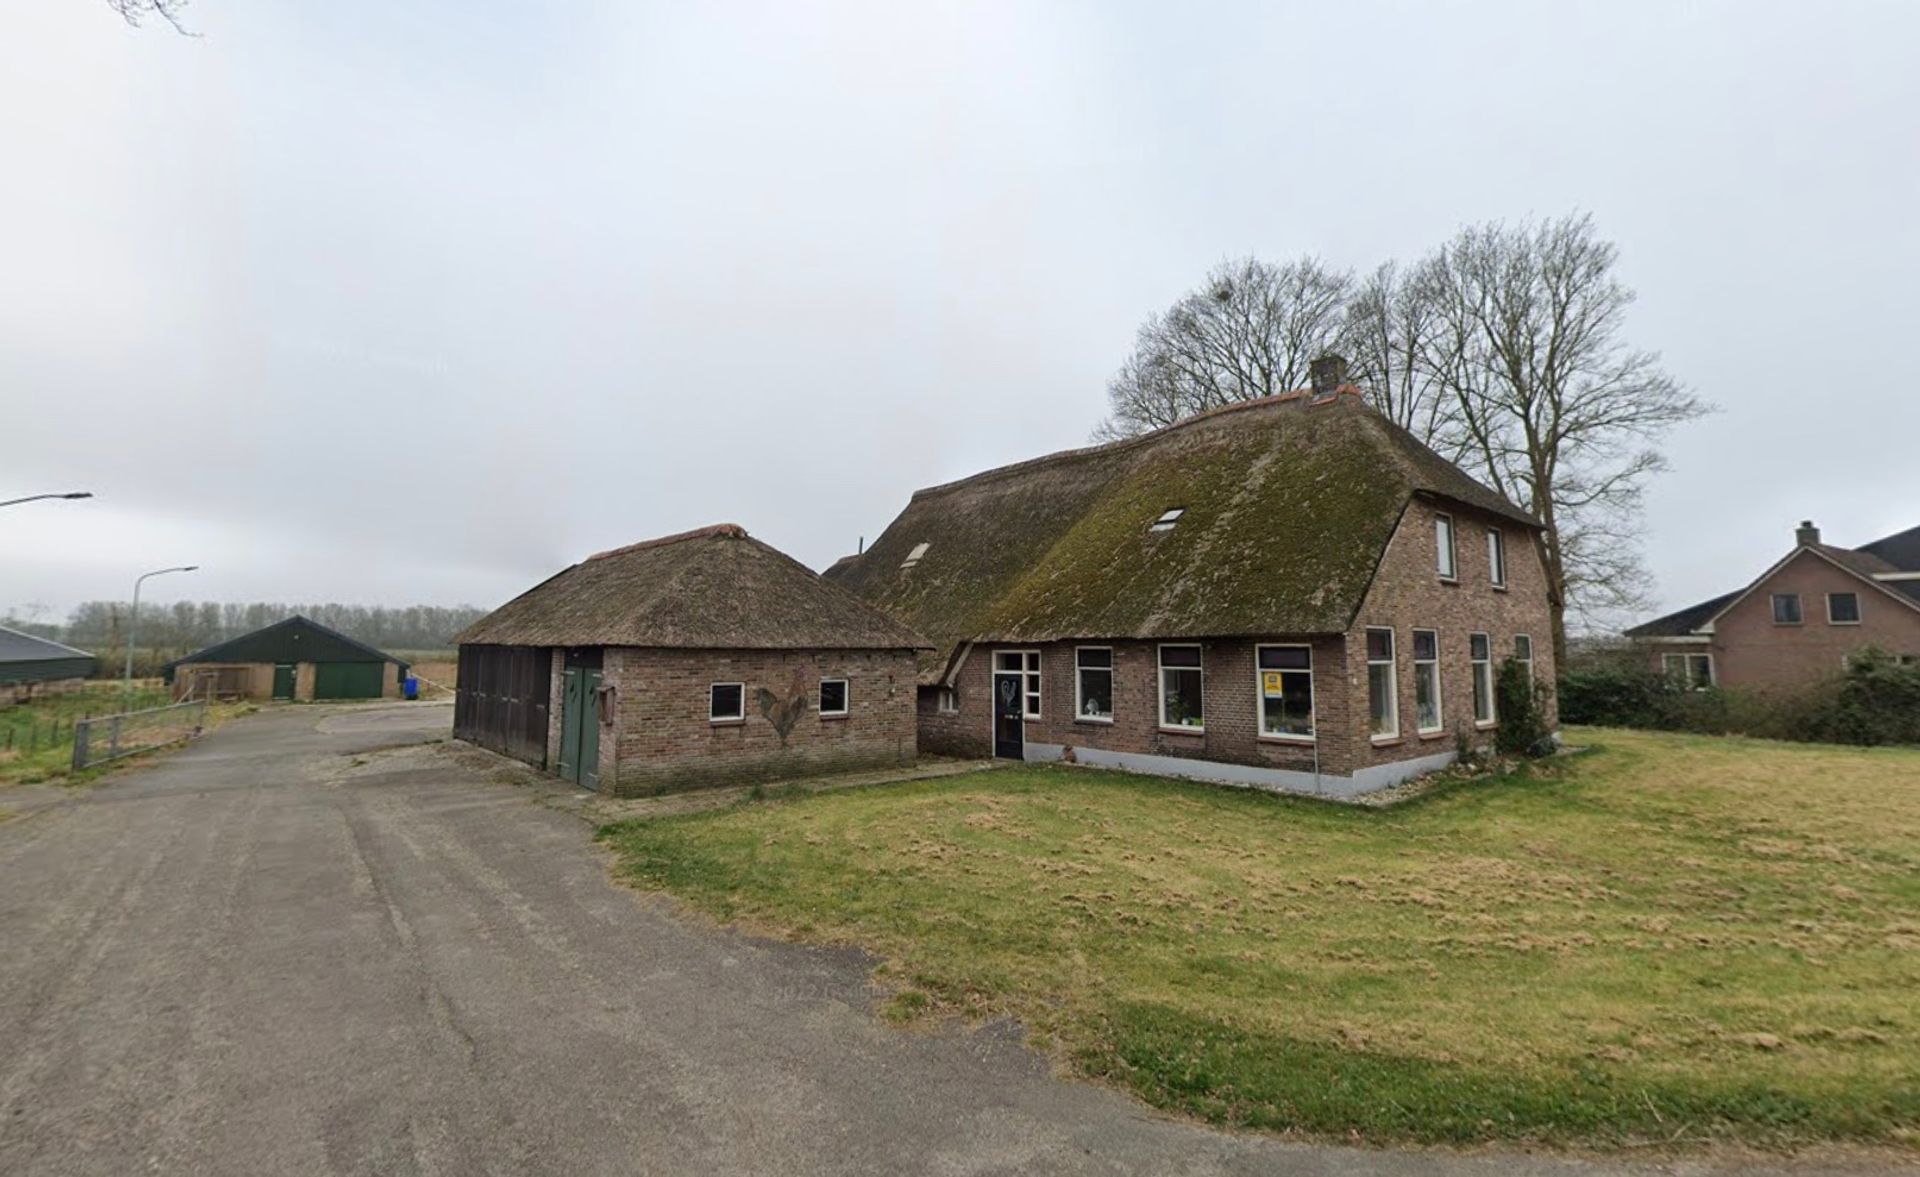 Kwadrant noodsituatie tragedie Noord-Brabant koopt boerderijen in andere provincies op om ze vervolgens  stil te leggen - Joop - BNNVARA